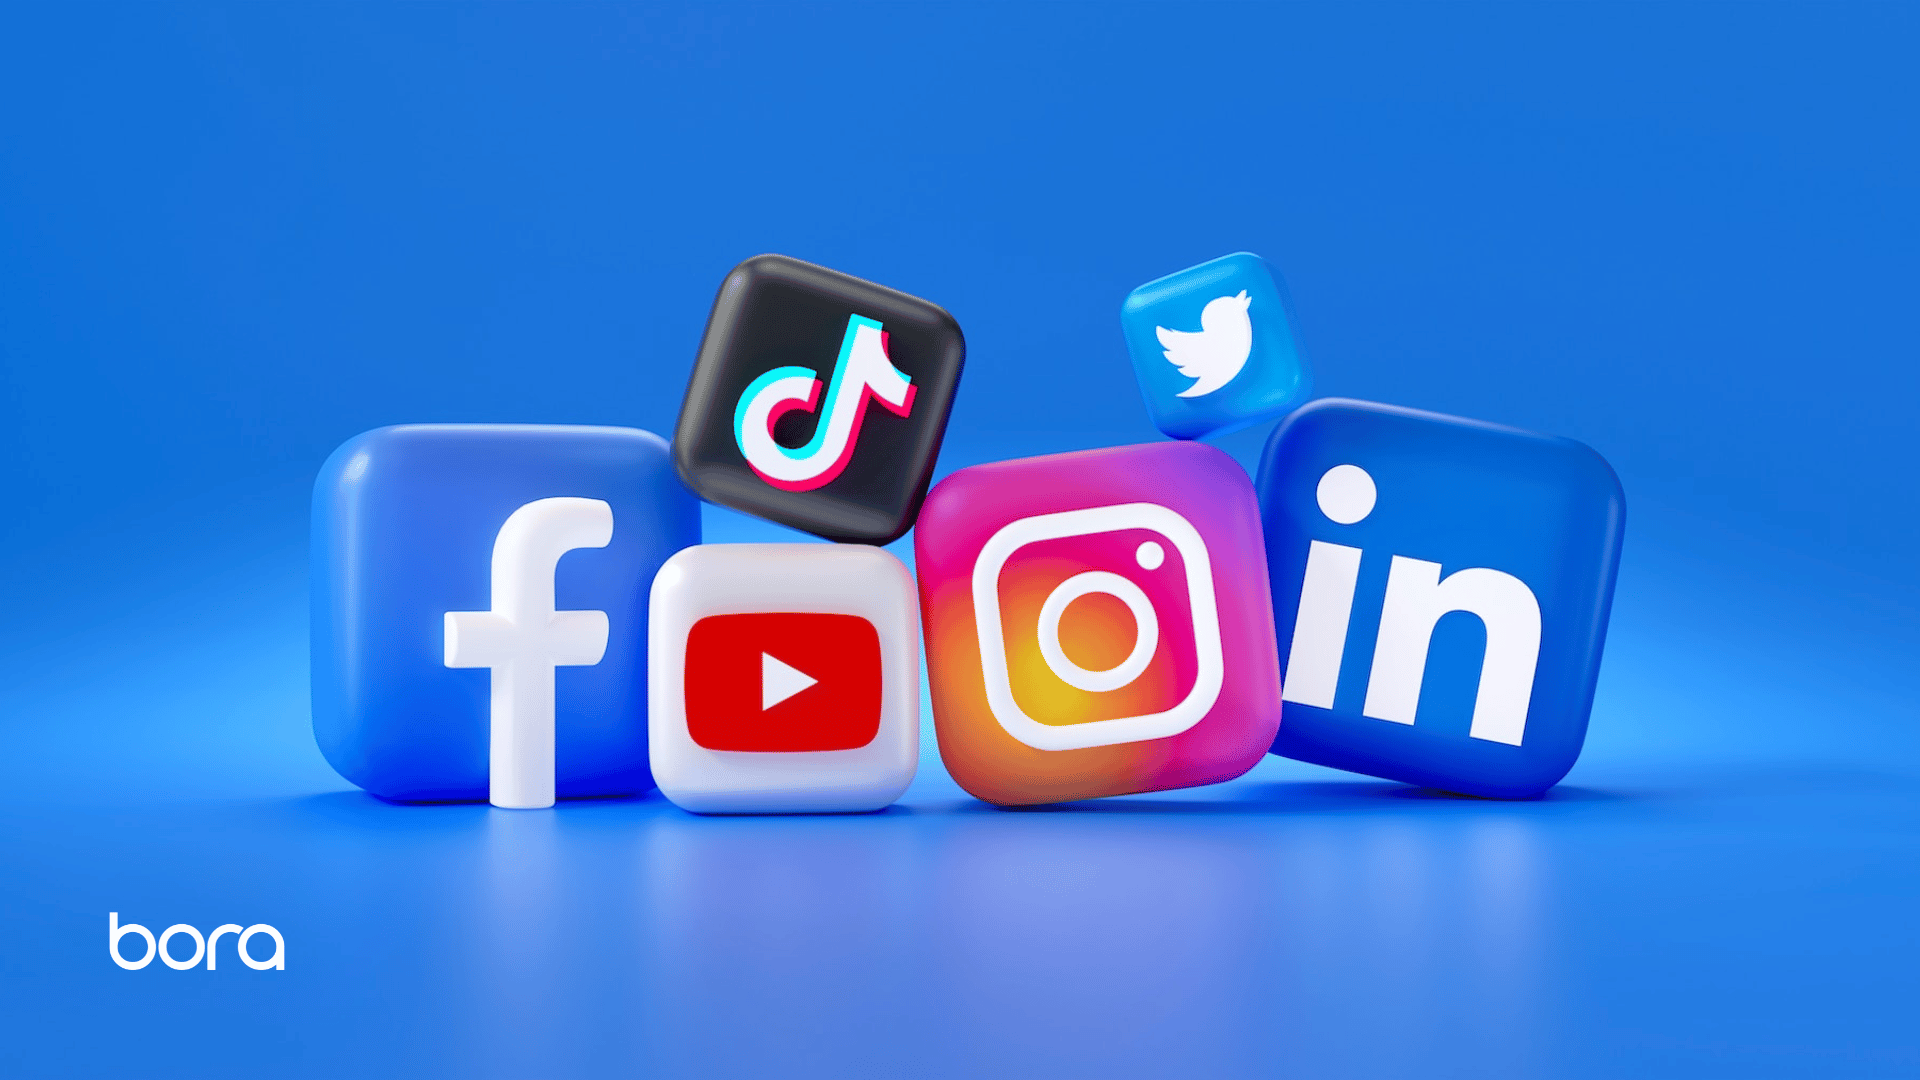 Social media logos for facebook, TikTok, Youtube, Instagram, Twitter and LinkedIn